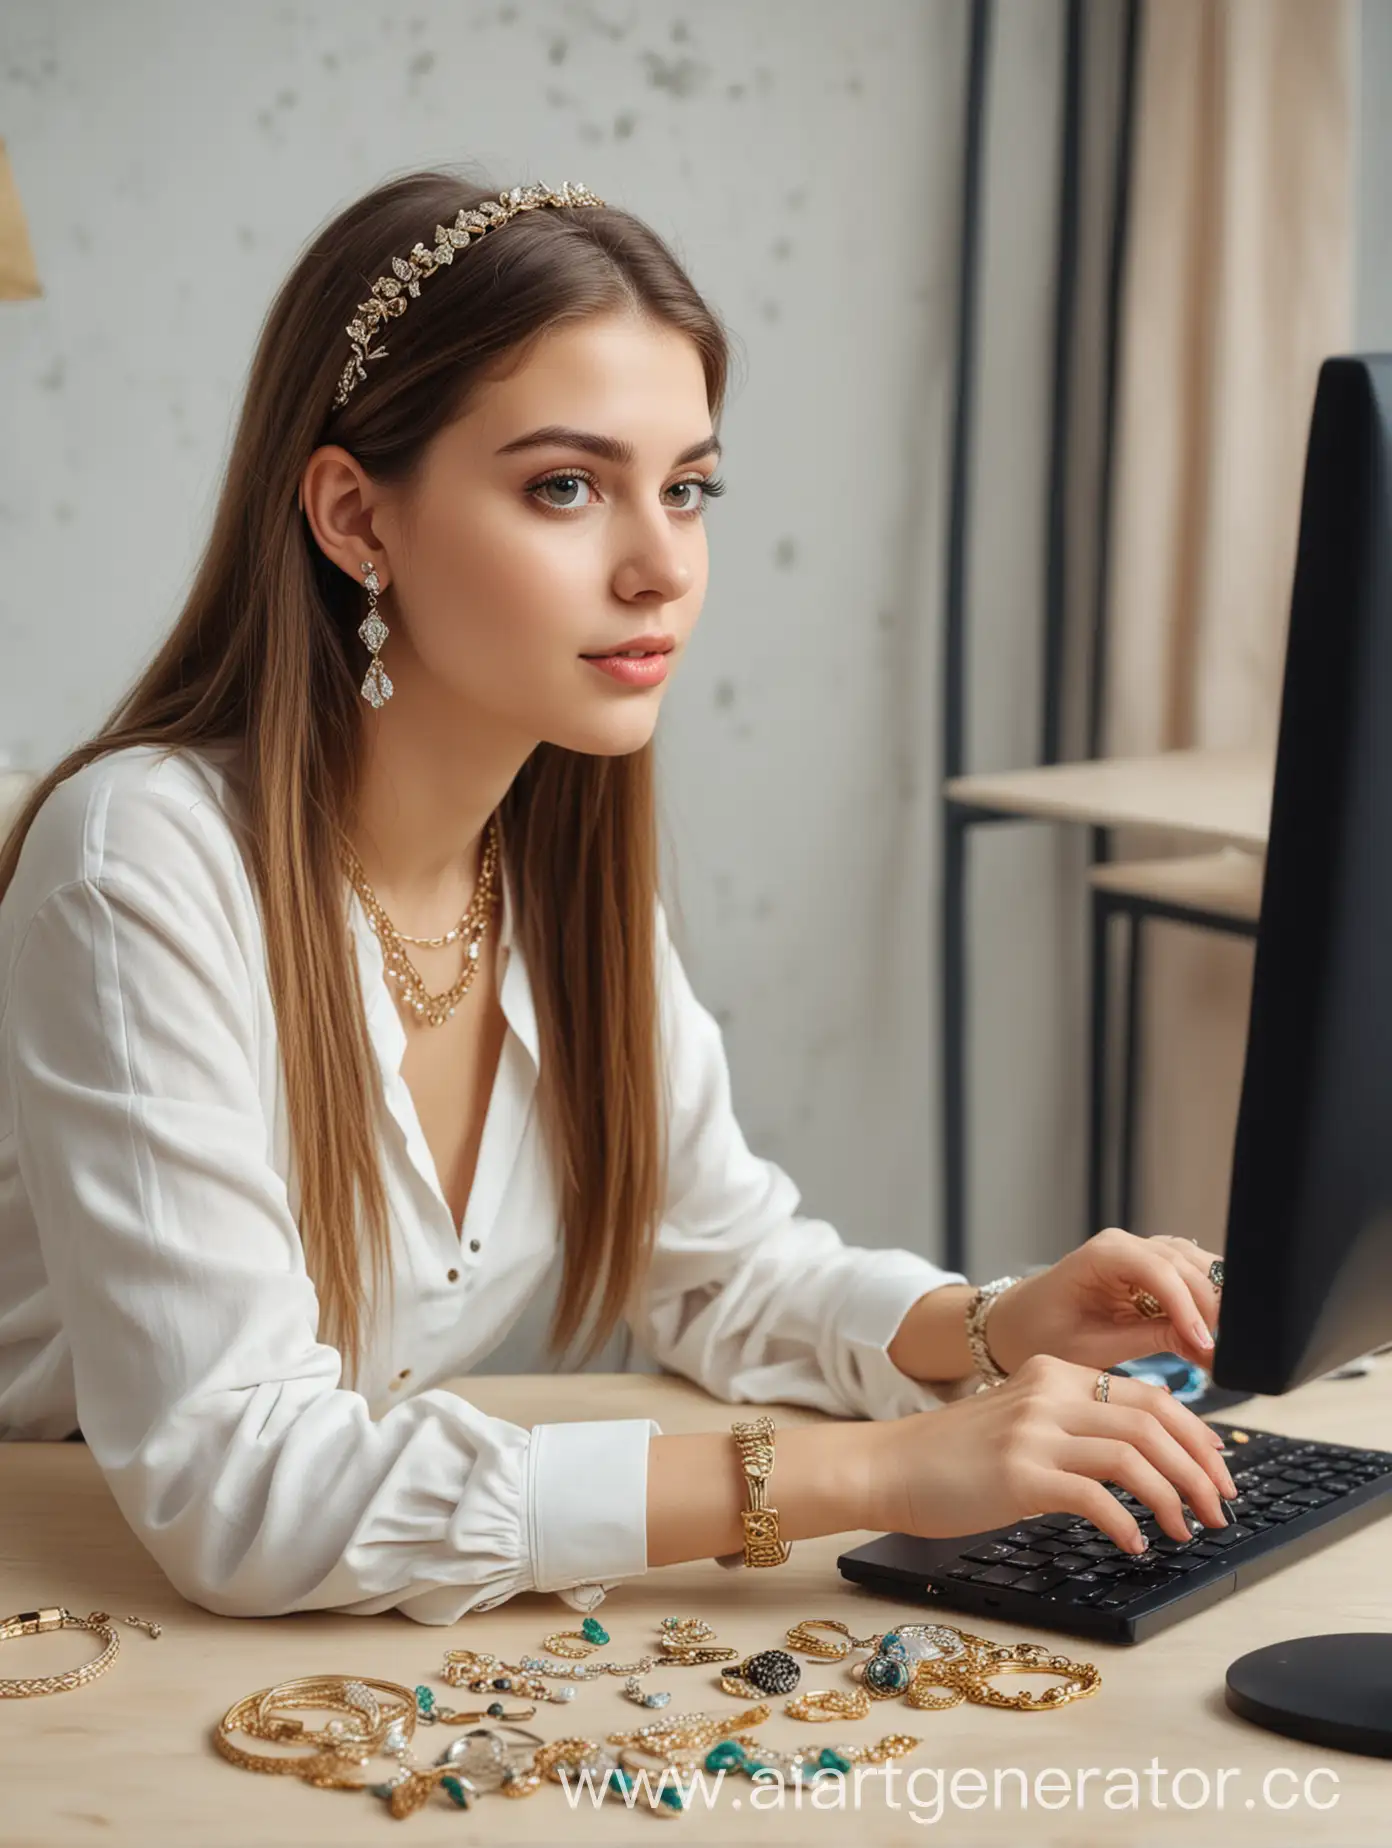 девушка в украшениях сидит за компьютером и ищет на сайте новые украшения